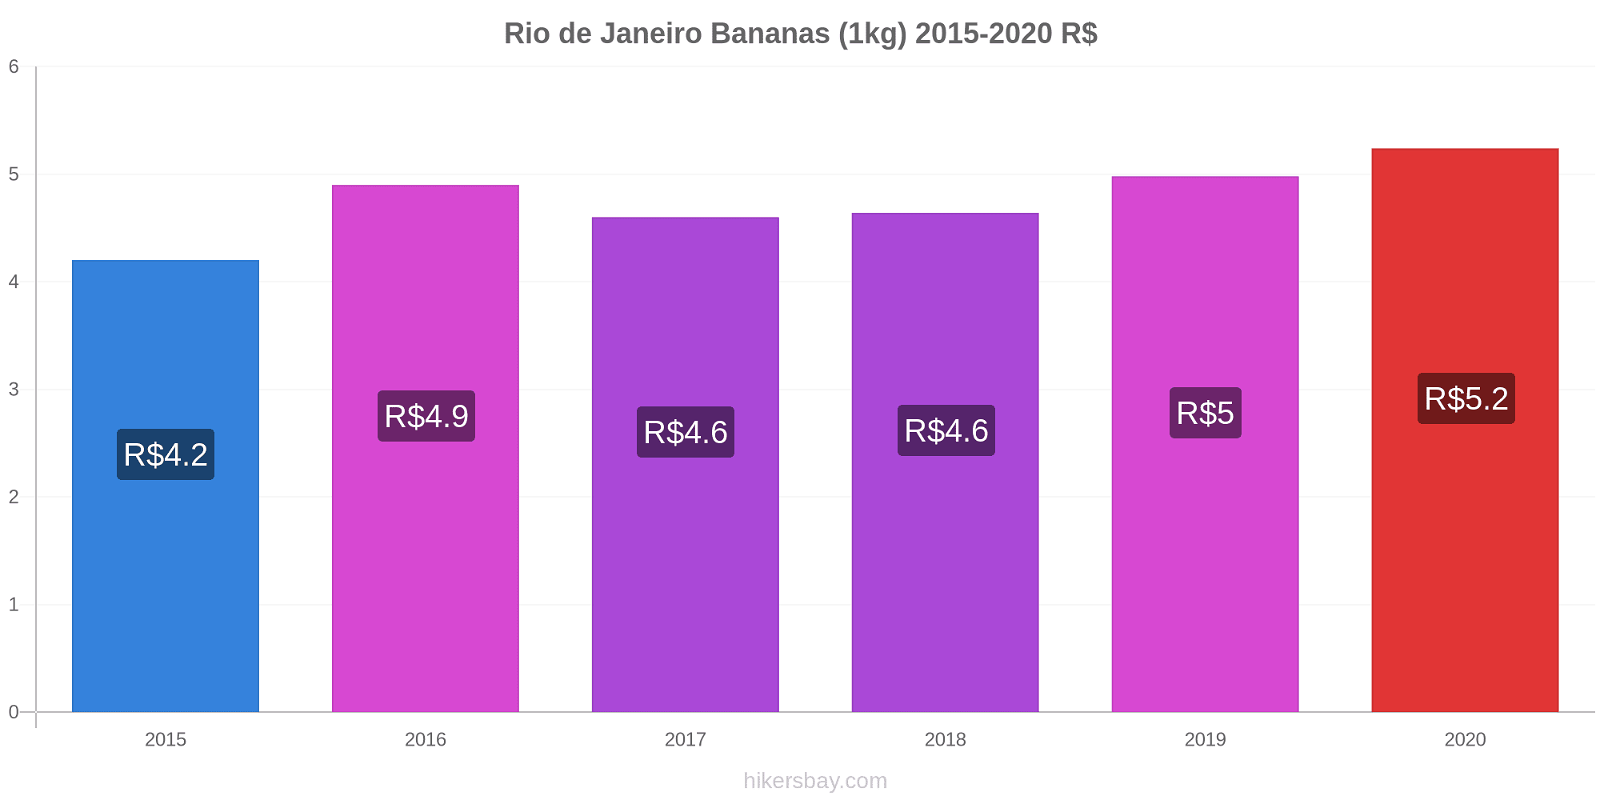 Rio de Janeiro variação de preço Banana (1kg) hikersbay.com